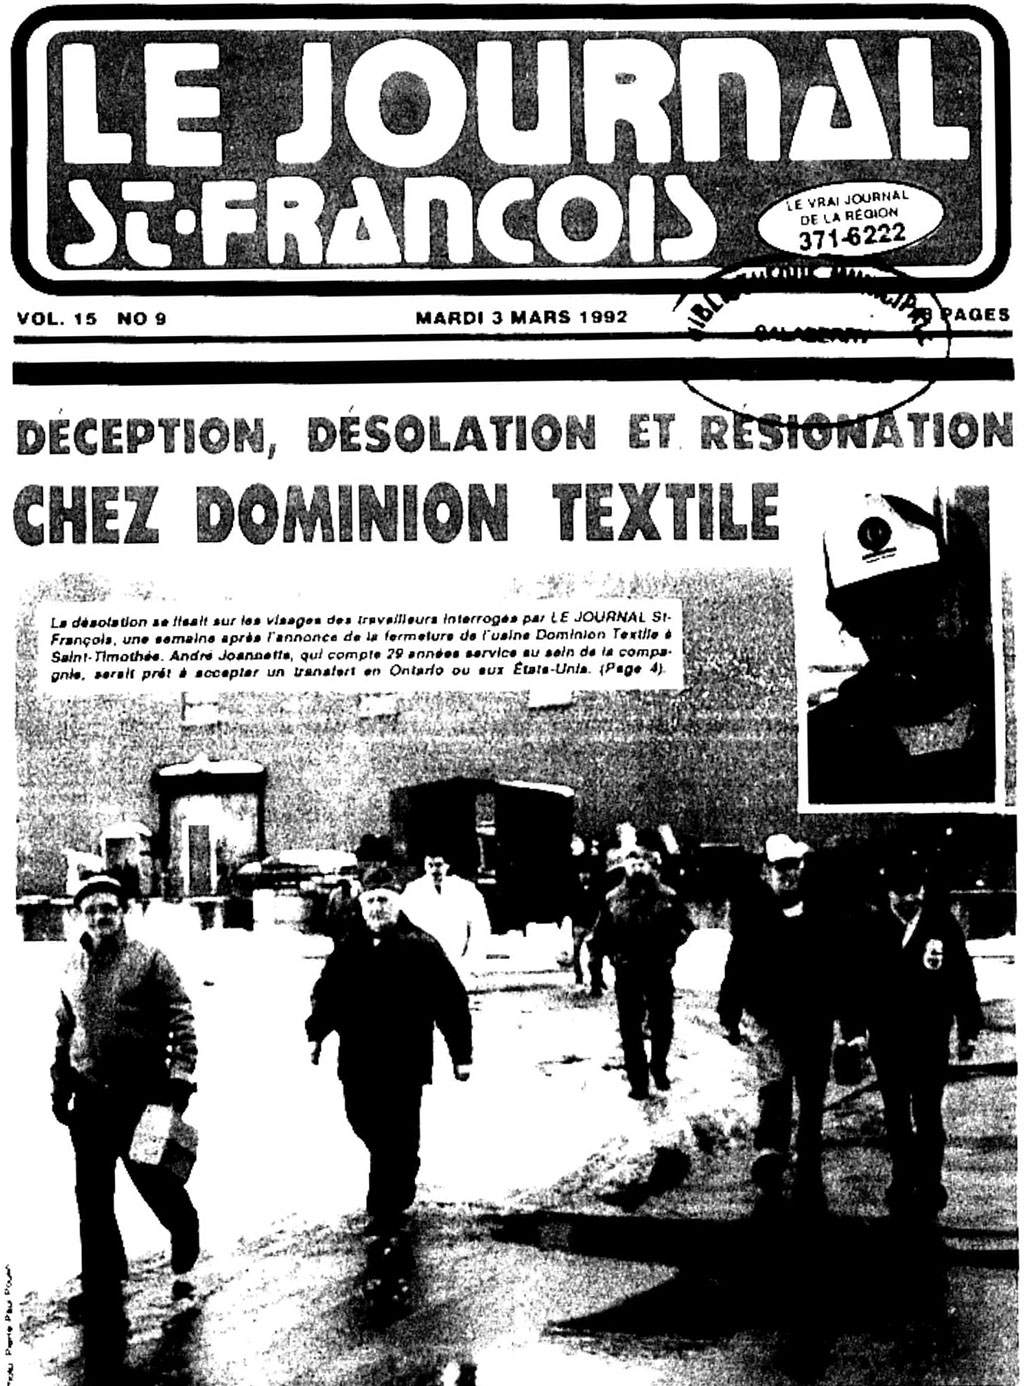 Première page d'un journal, avec photo d'ouvriers à la sortie d'usine.